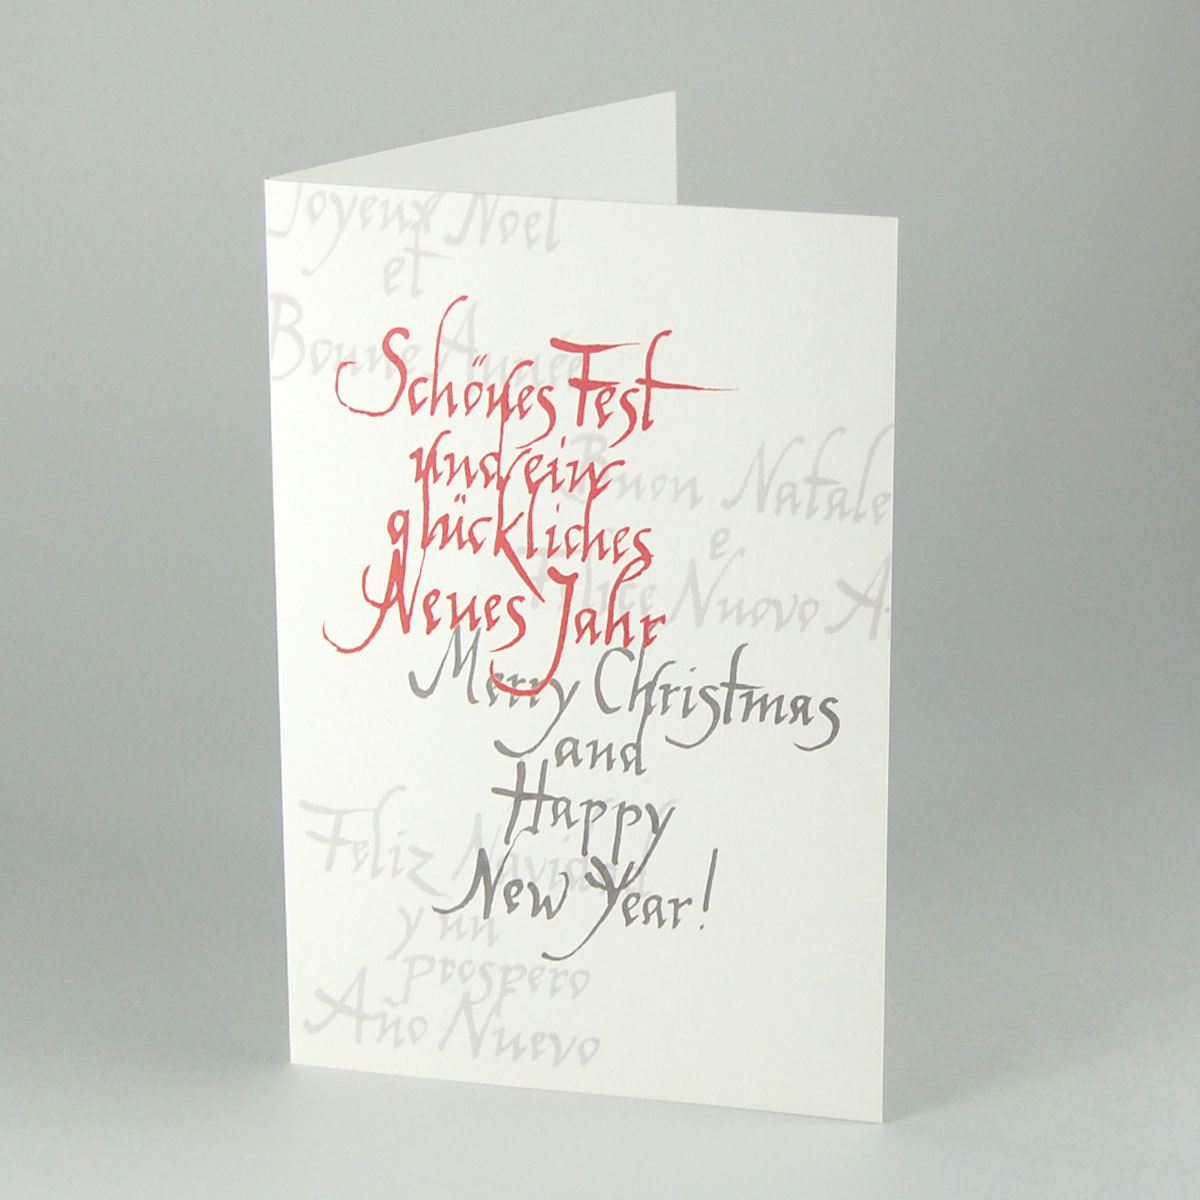 Schönes Fest, Merry Christmas kalligrafische Weihnachtskarte in fünf Sprachen aus Recycling-Karton